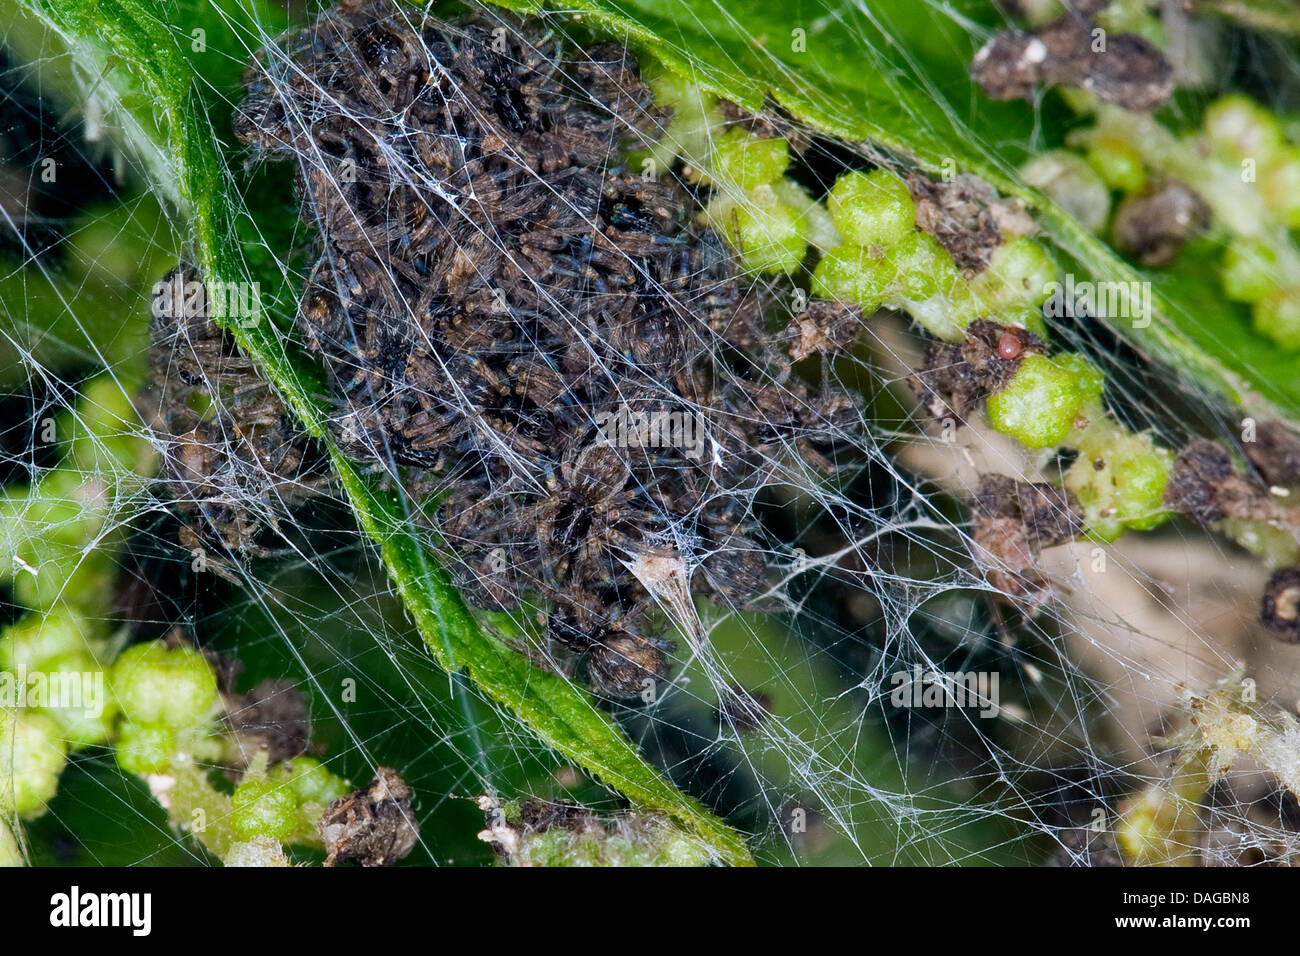 Vivaio spider web, fantastica pesca spider (Pisaura mirabilis), giovani ragni nel nido, Germania Foto Stock